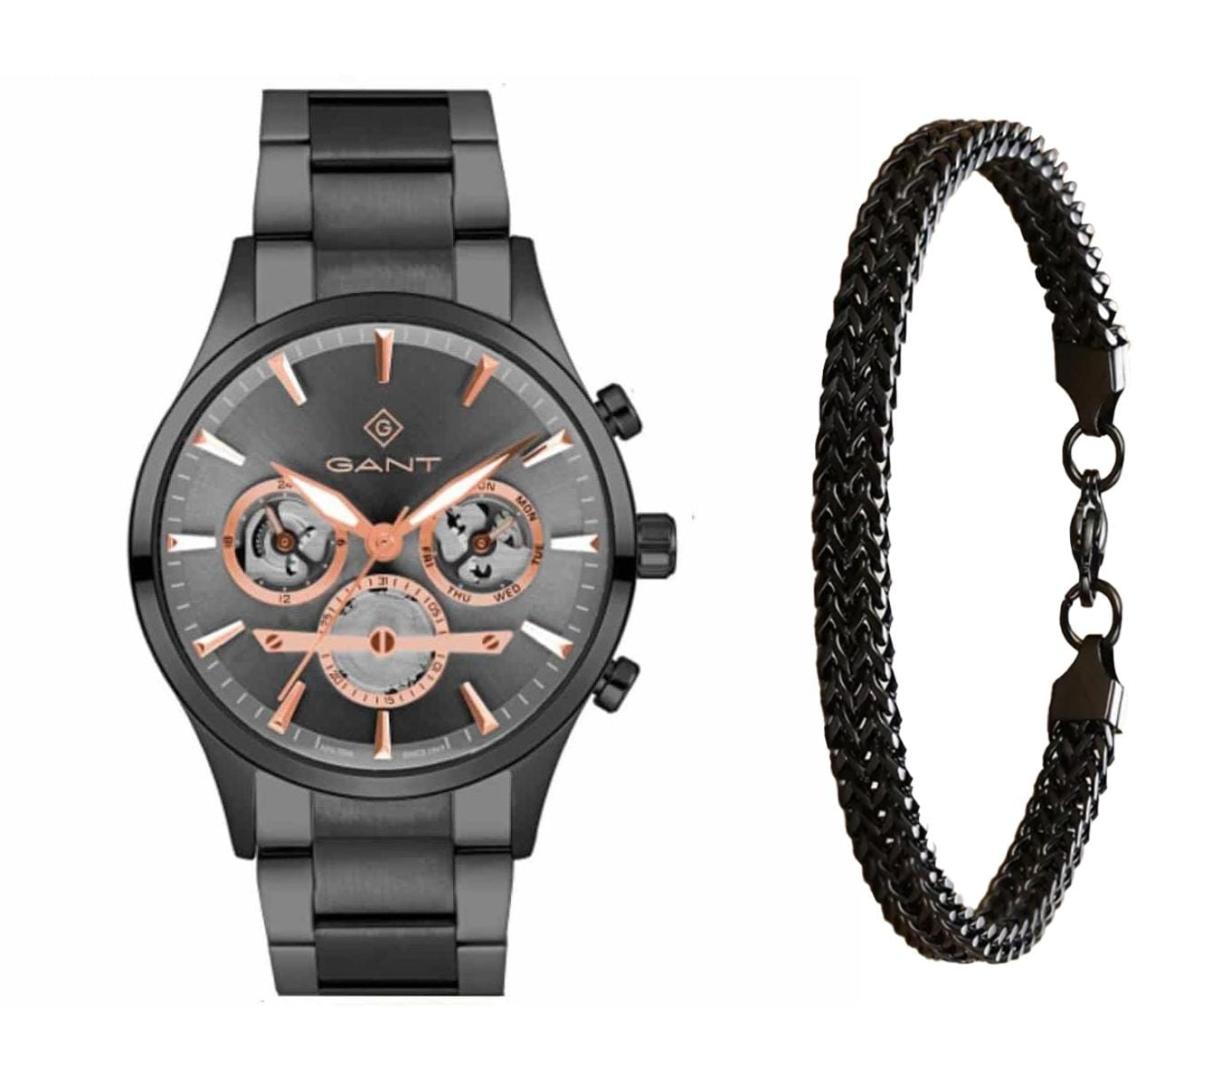 שעון יד אנלוגי לגבר gant gt131008 גאנט עם צמיד חוליות שחור